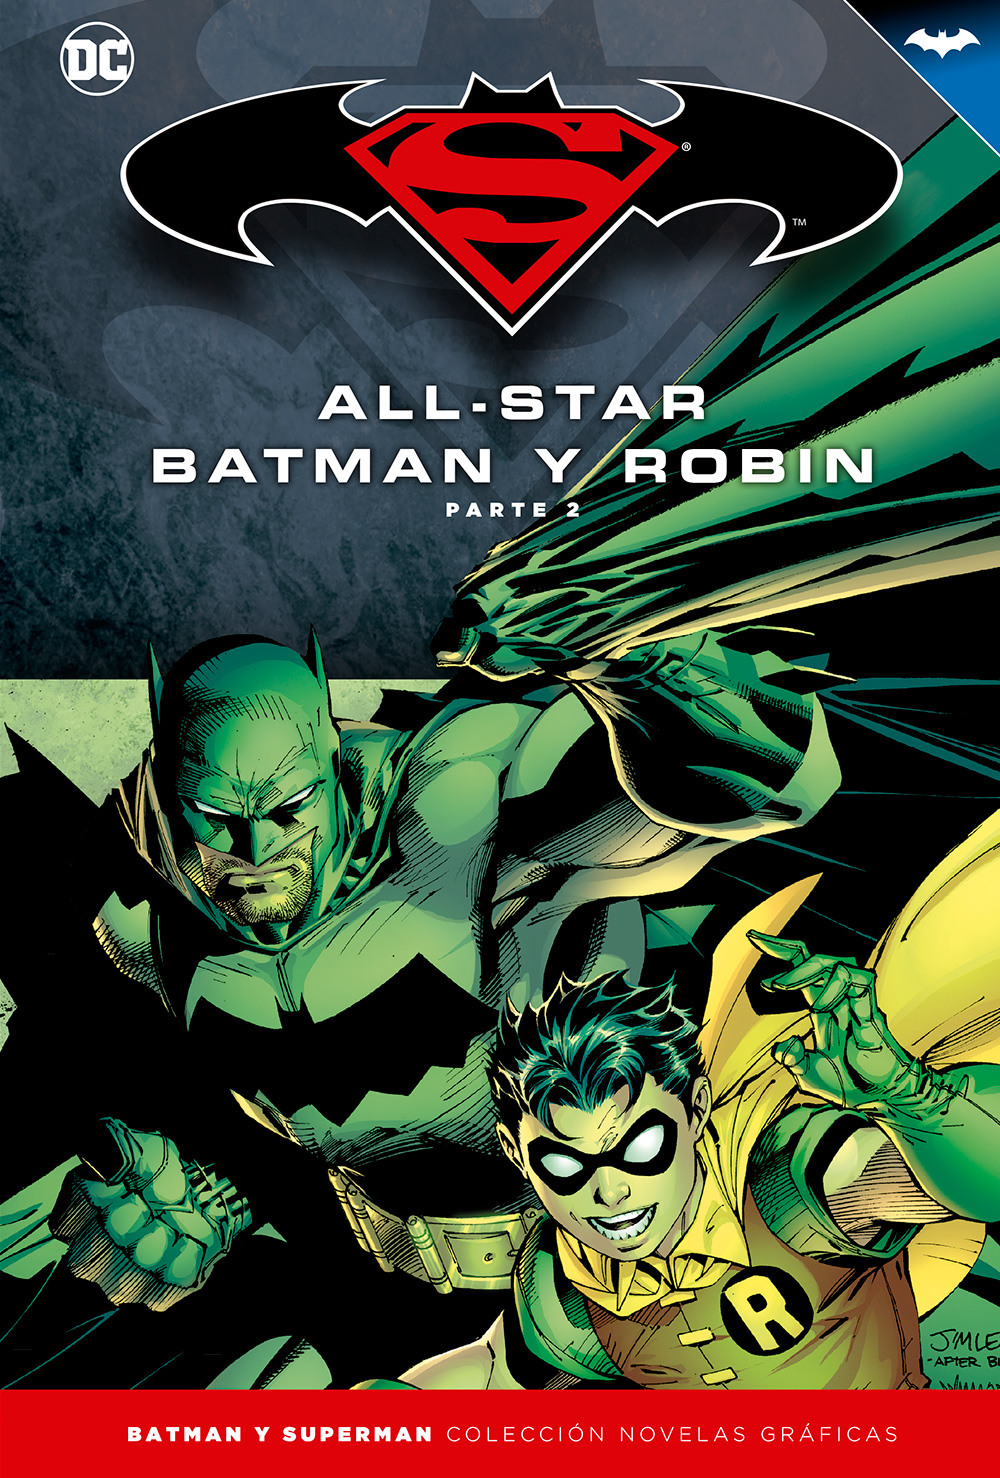 26 - [DC - Salvat] Batman y Superman: Colección Novelas Gráficas - Página 3 Portada_BMSM_3_AllStarBatman2